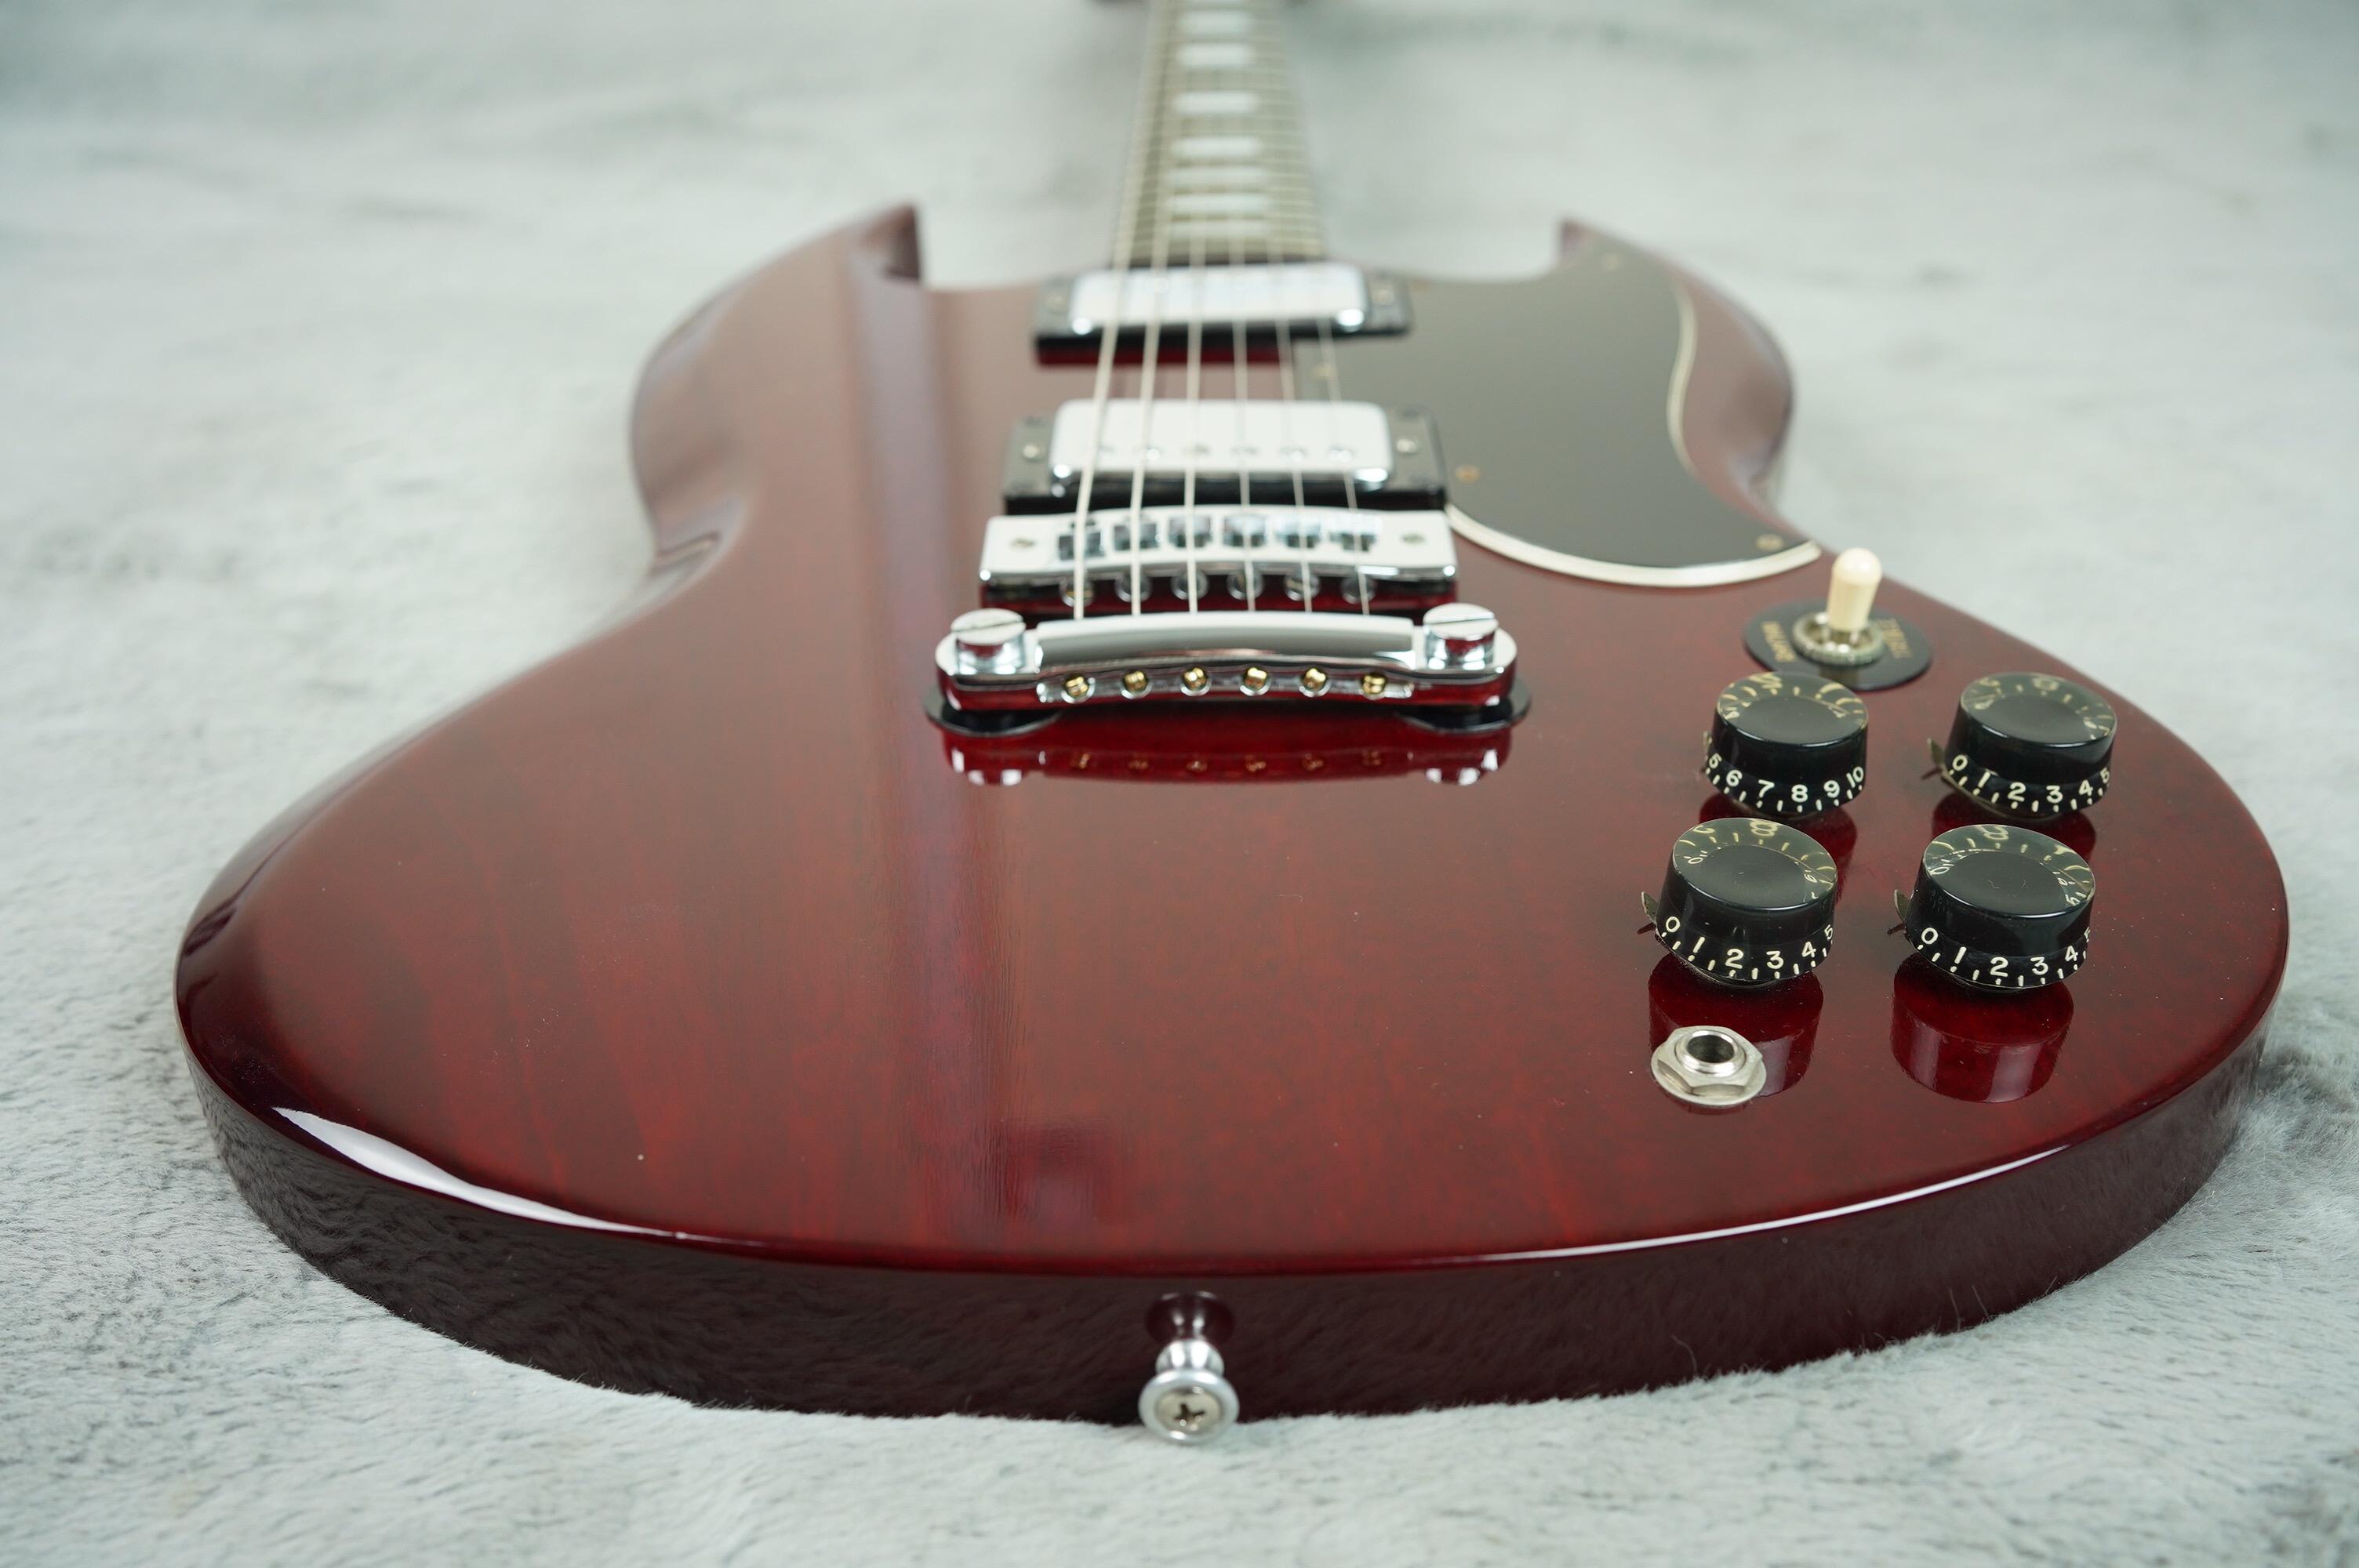 1974 Gibson SG Standard near MINT